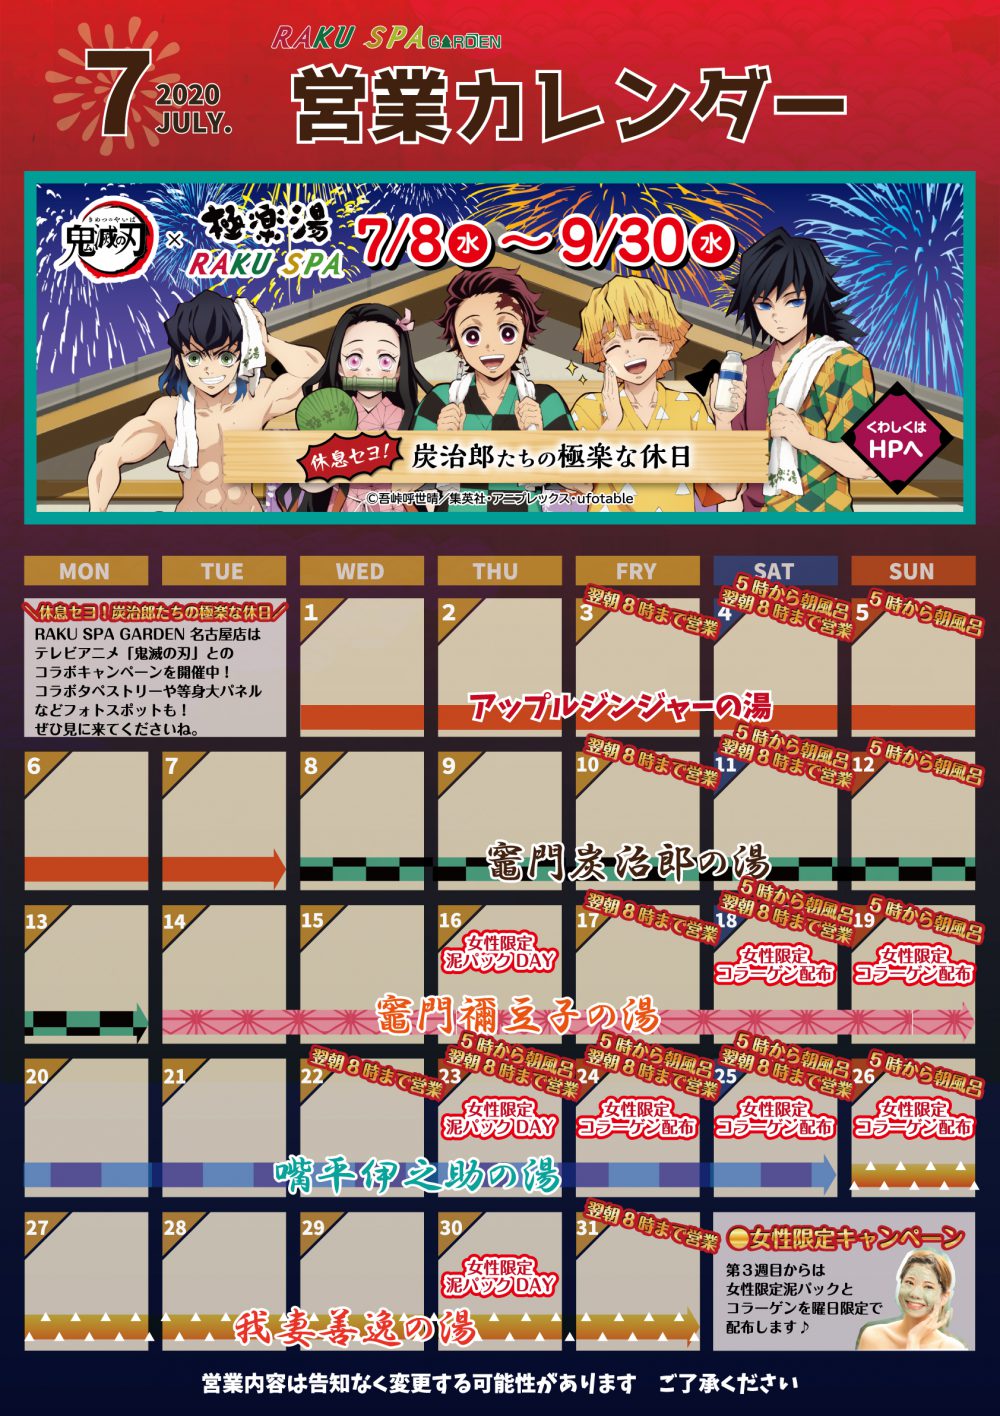 営業カレンダー 7月のお知らせ らくスパガーデン名古屋